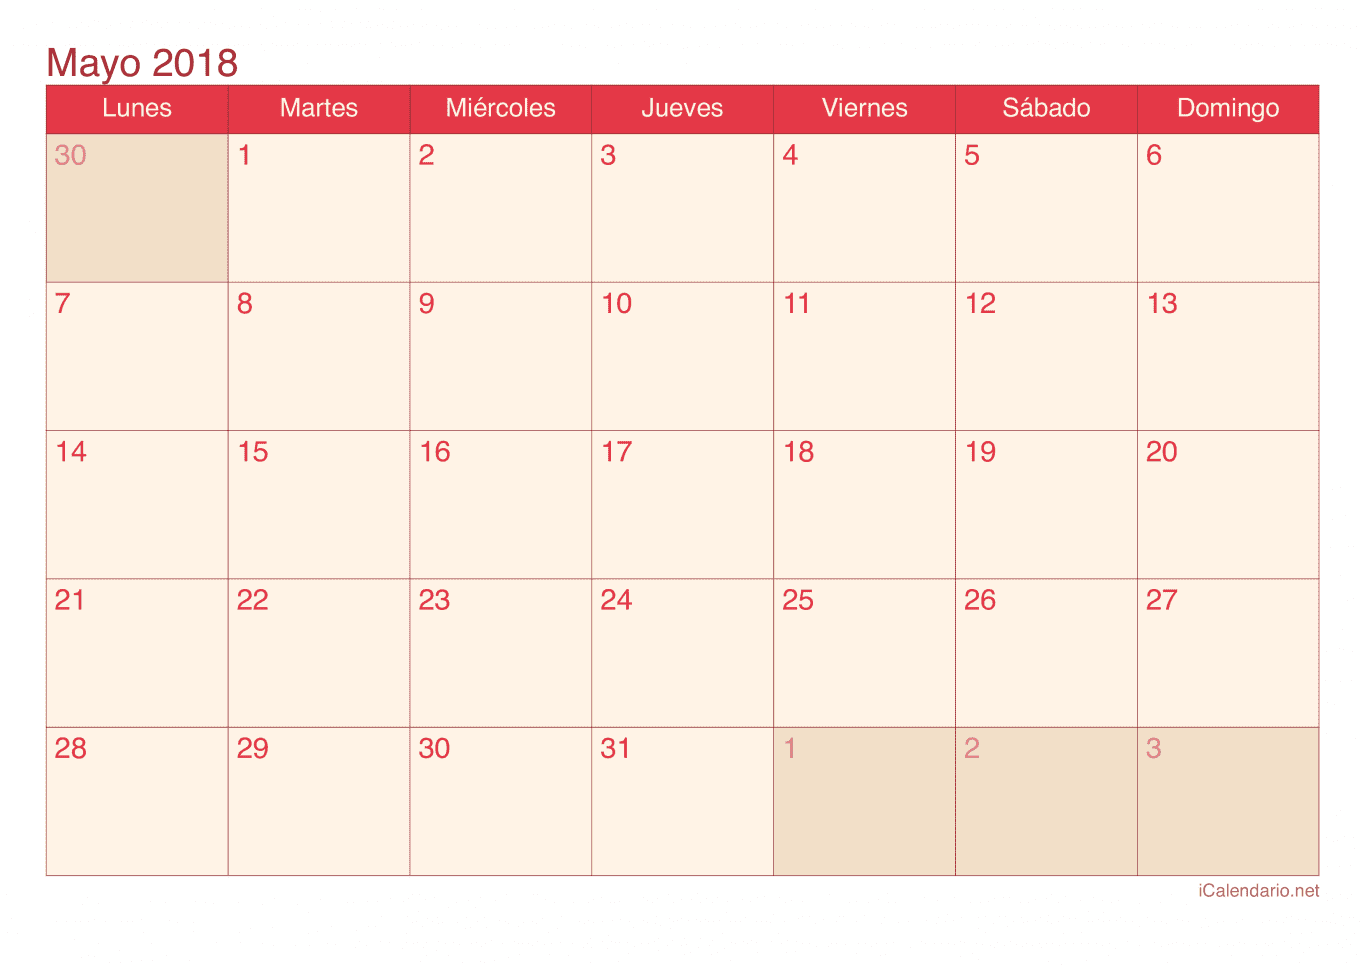 Calendario de mayo 2018 - Cherry